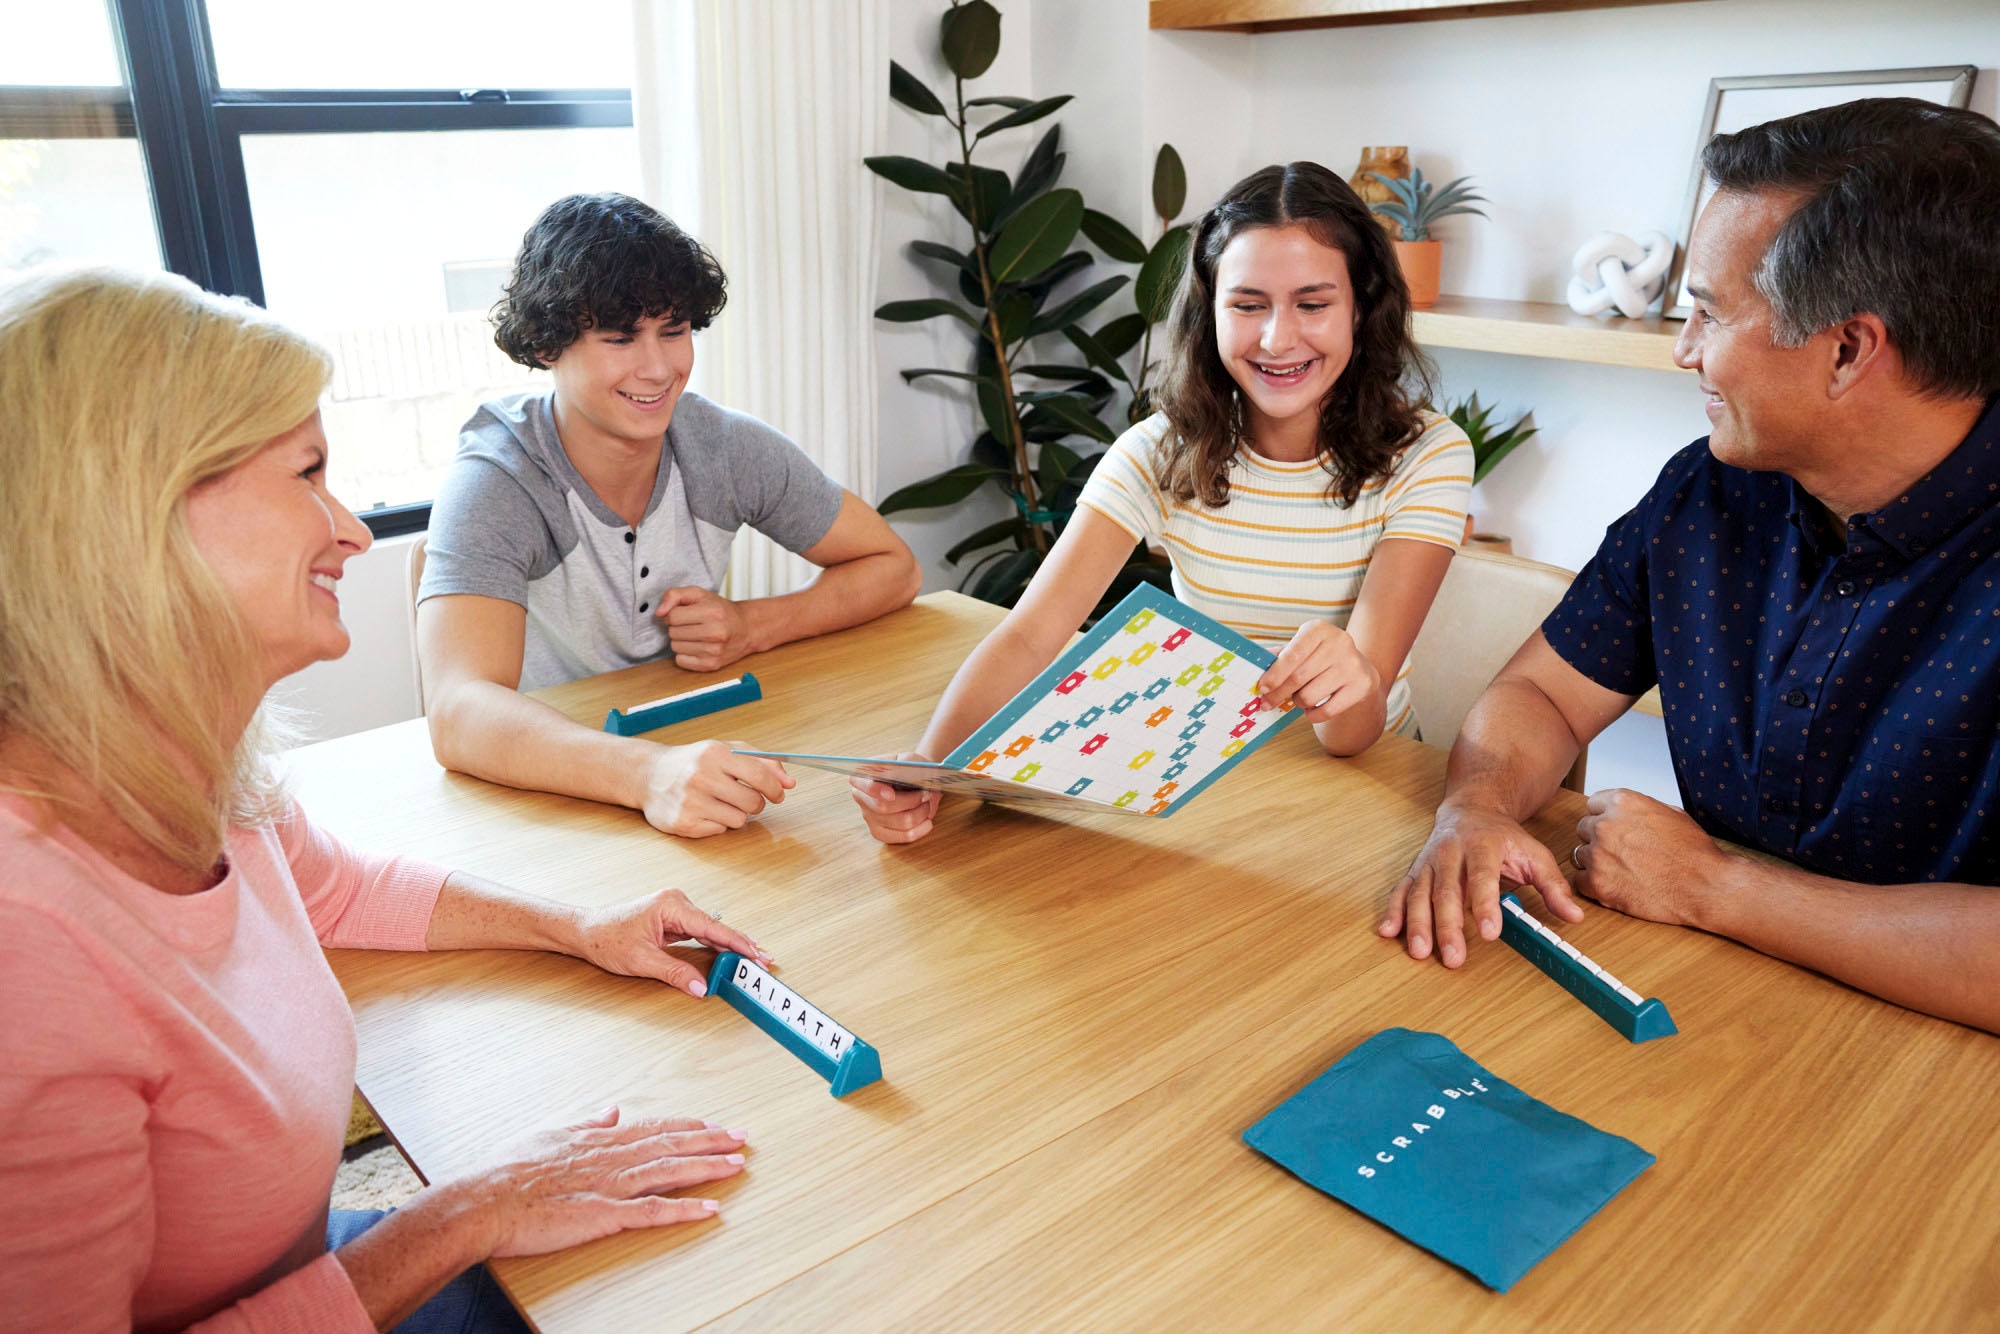 Mattel games Spiel »Scrabble - 2 Spiele in 1«